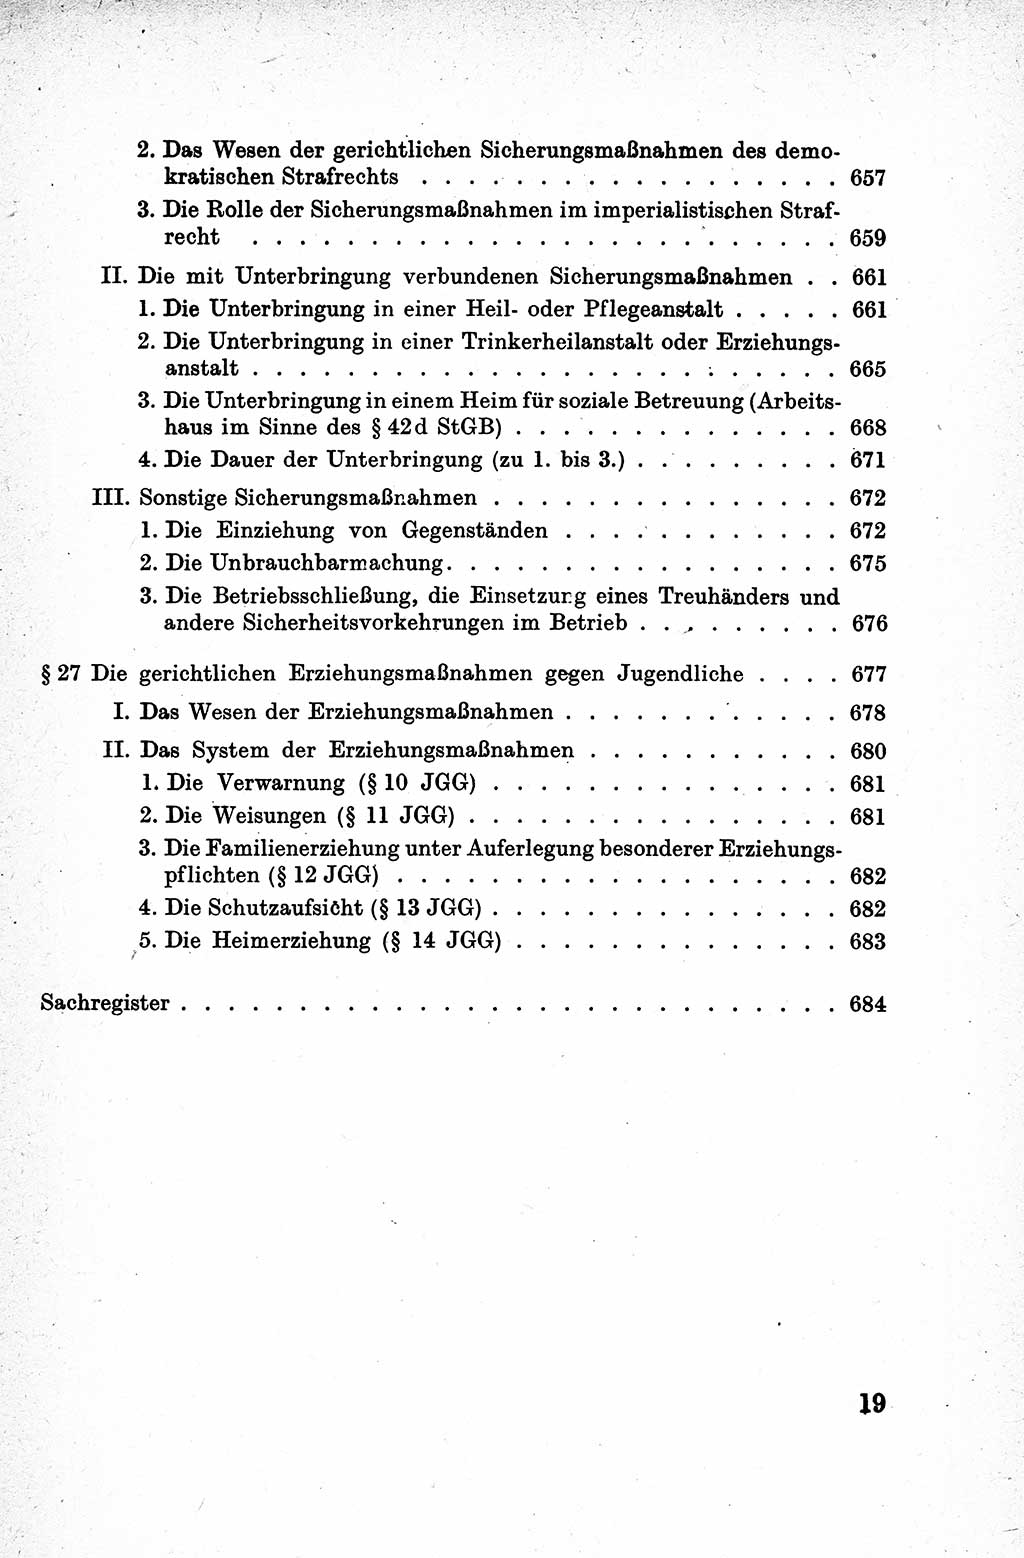 Lehrbuch des Strafrechts der Deutschen Demokratischen Republik (DDR), Allgemeiner Teil 1959, Seite 19 (Lb. Strafr. DDR AT 1959, S. 19)